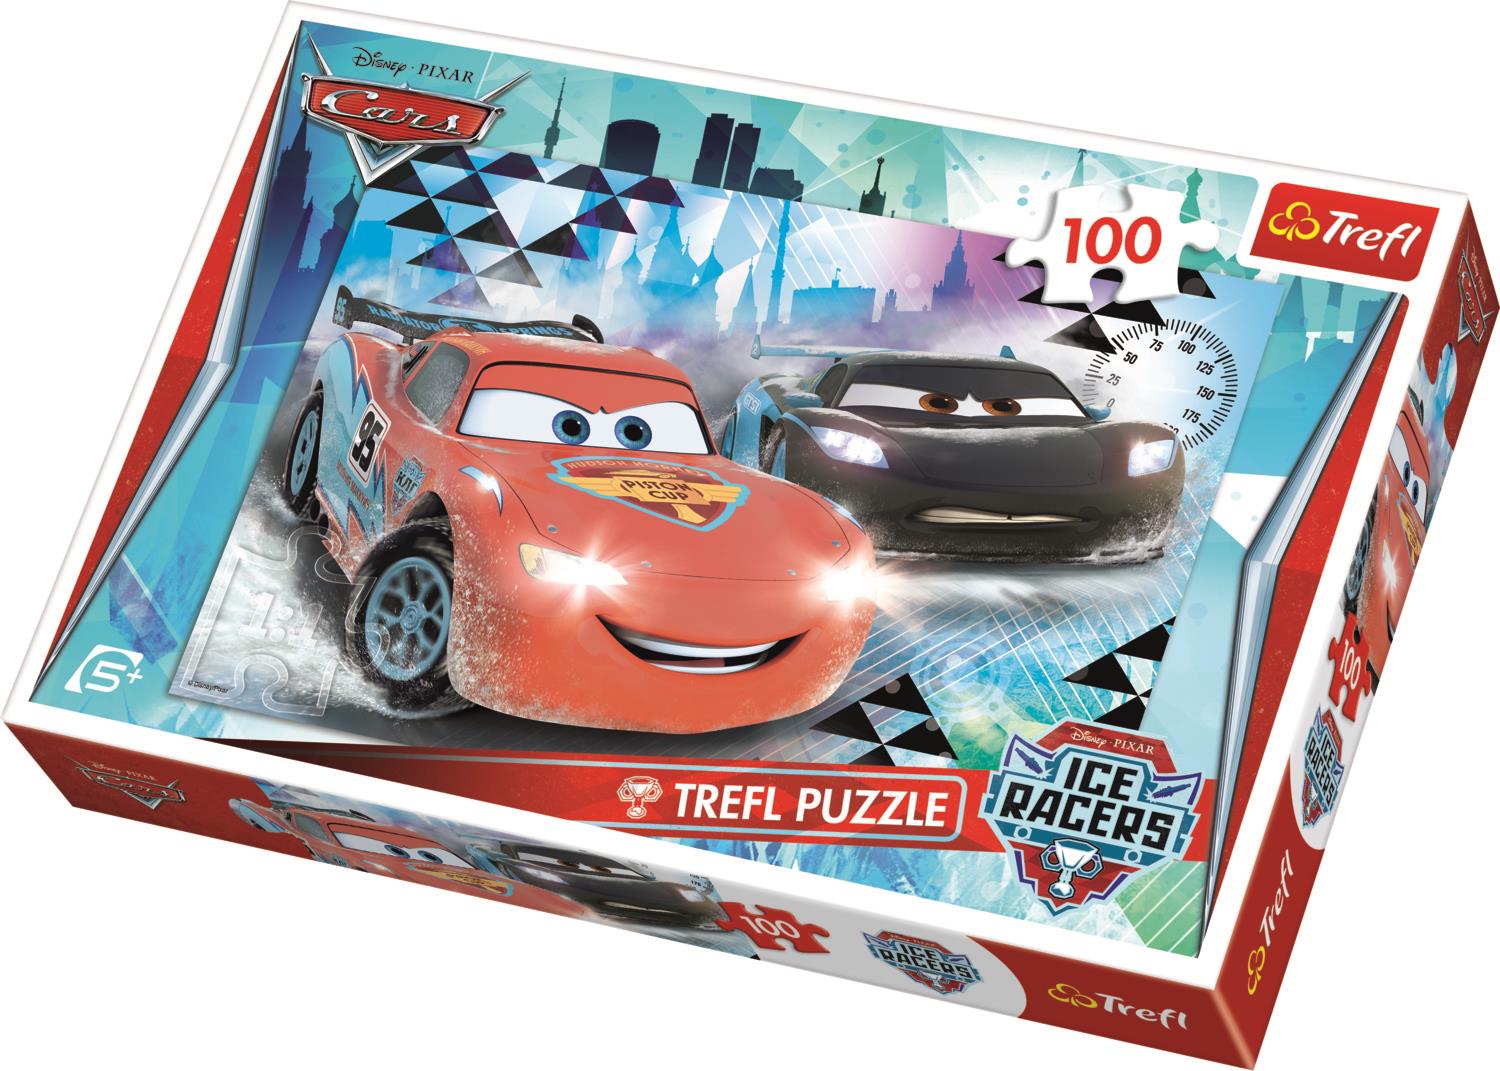 Trefl Çocuk Puzzle 16290 Cars 2 Ice Andventure, Disney 100 Parça Puzzle